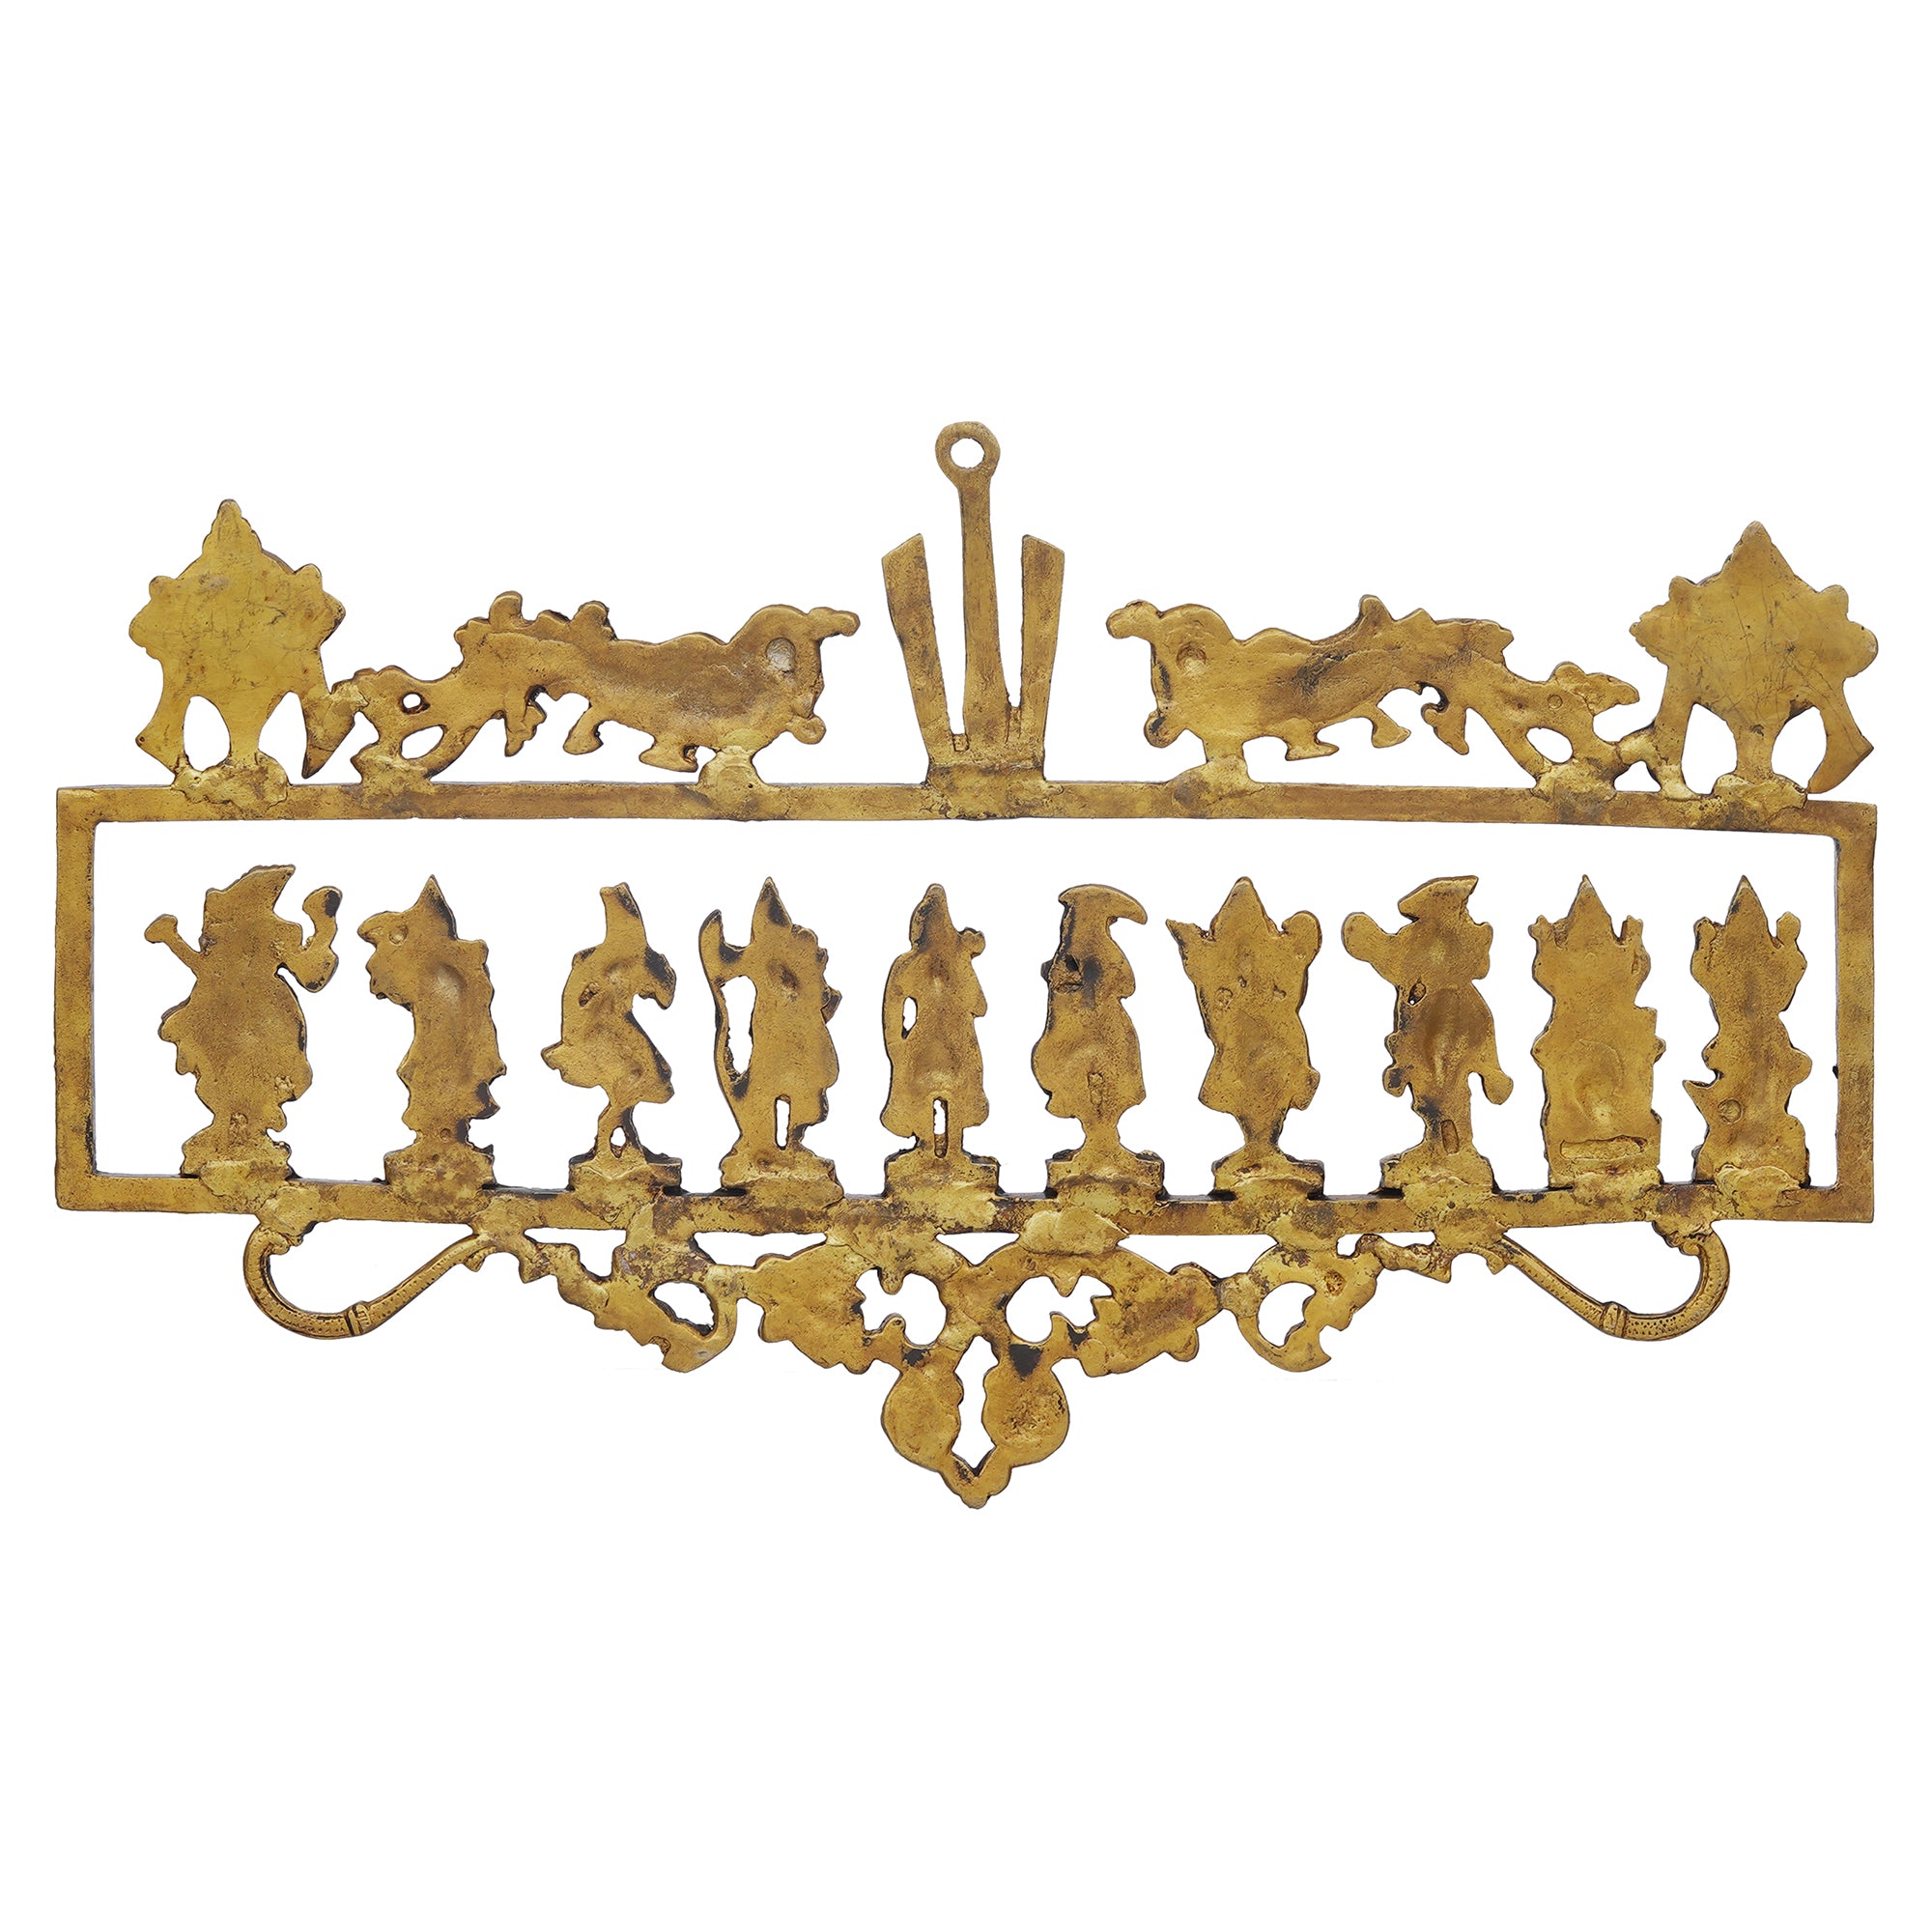 eCraftIndia Golden Brass Vishnu Dashavatara - Ten Incarnations of Lord Vishnu Religious Wall Hanging 8